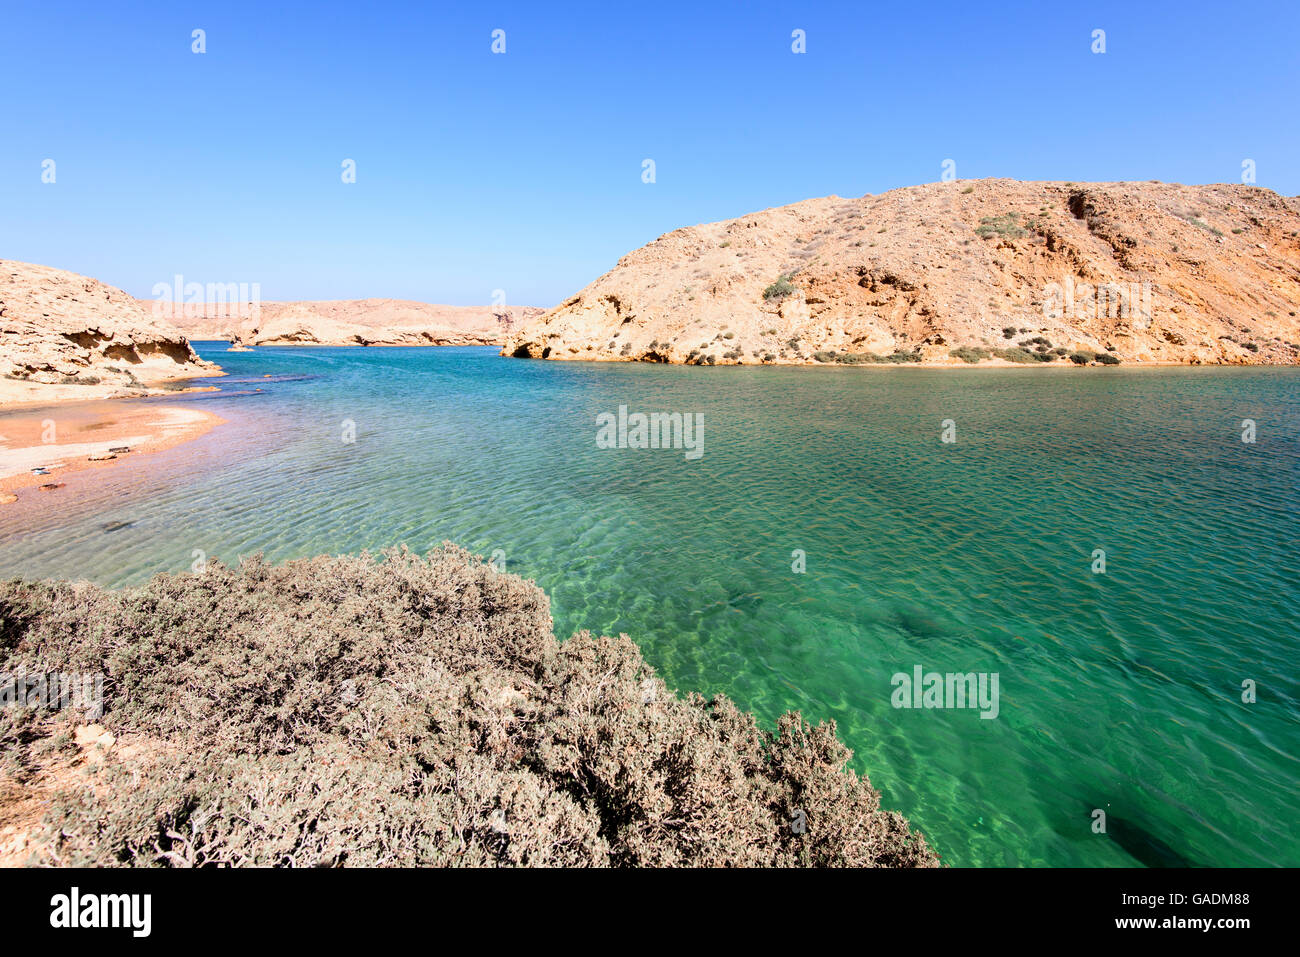 Ein wilder Strand in einer fjordartigen Bandar Khairan, Sultanat von Oman Stockfoto